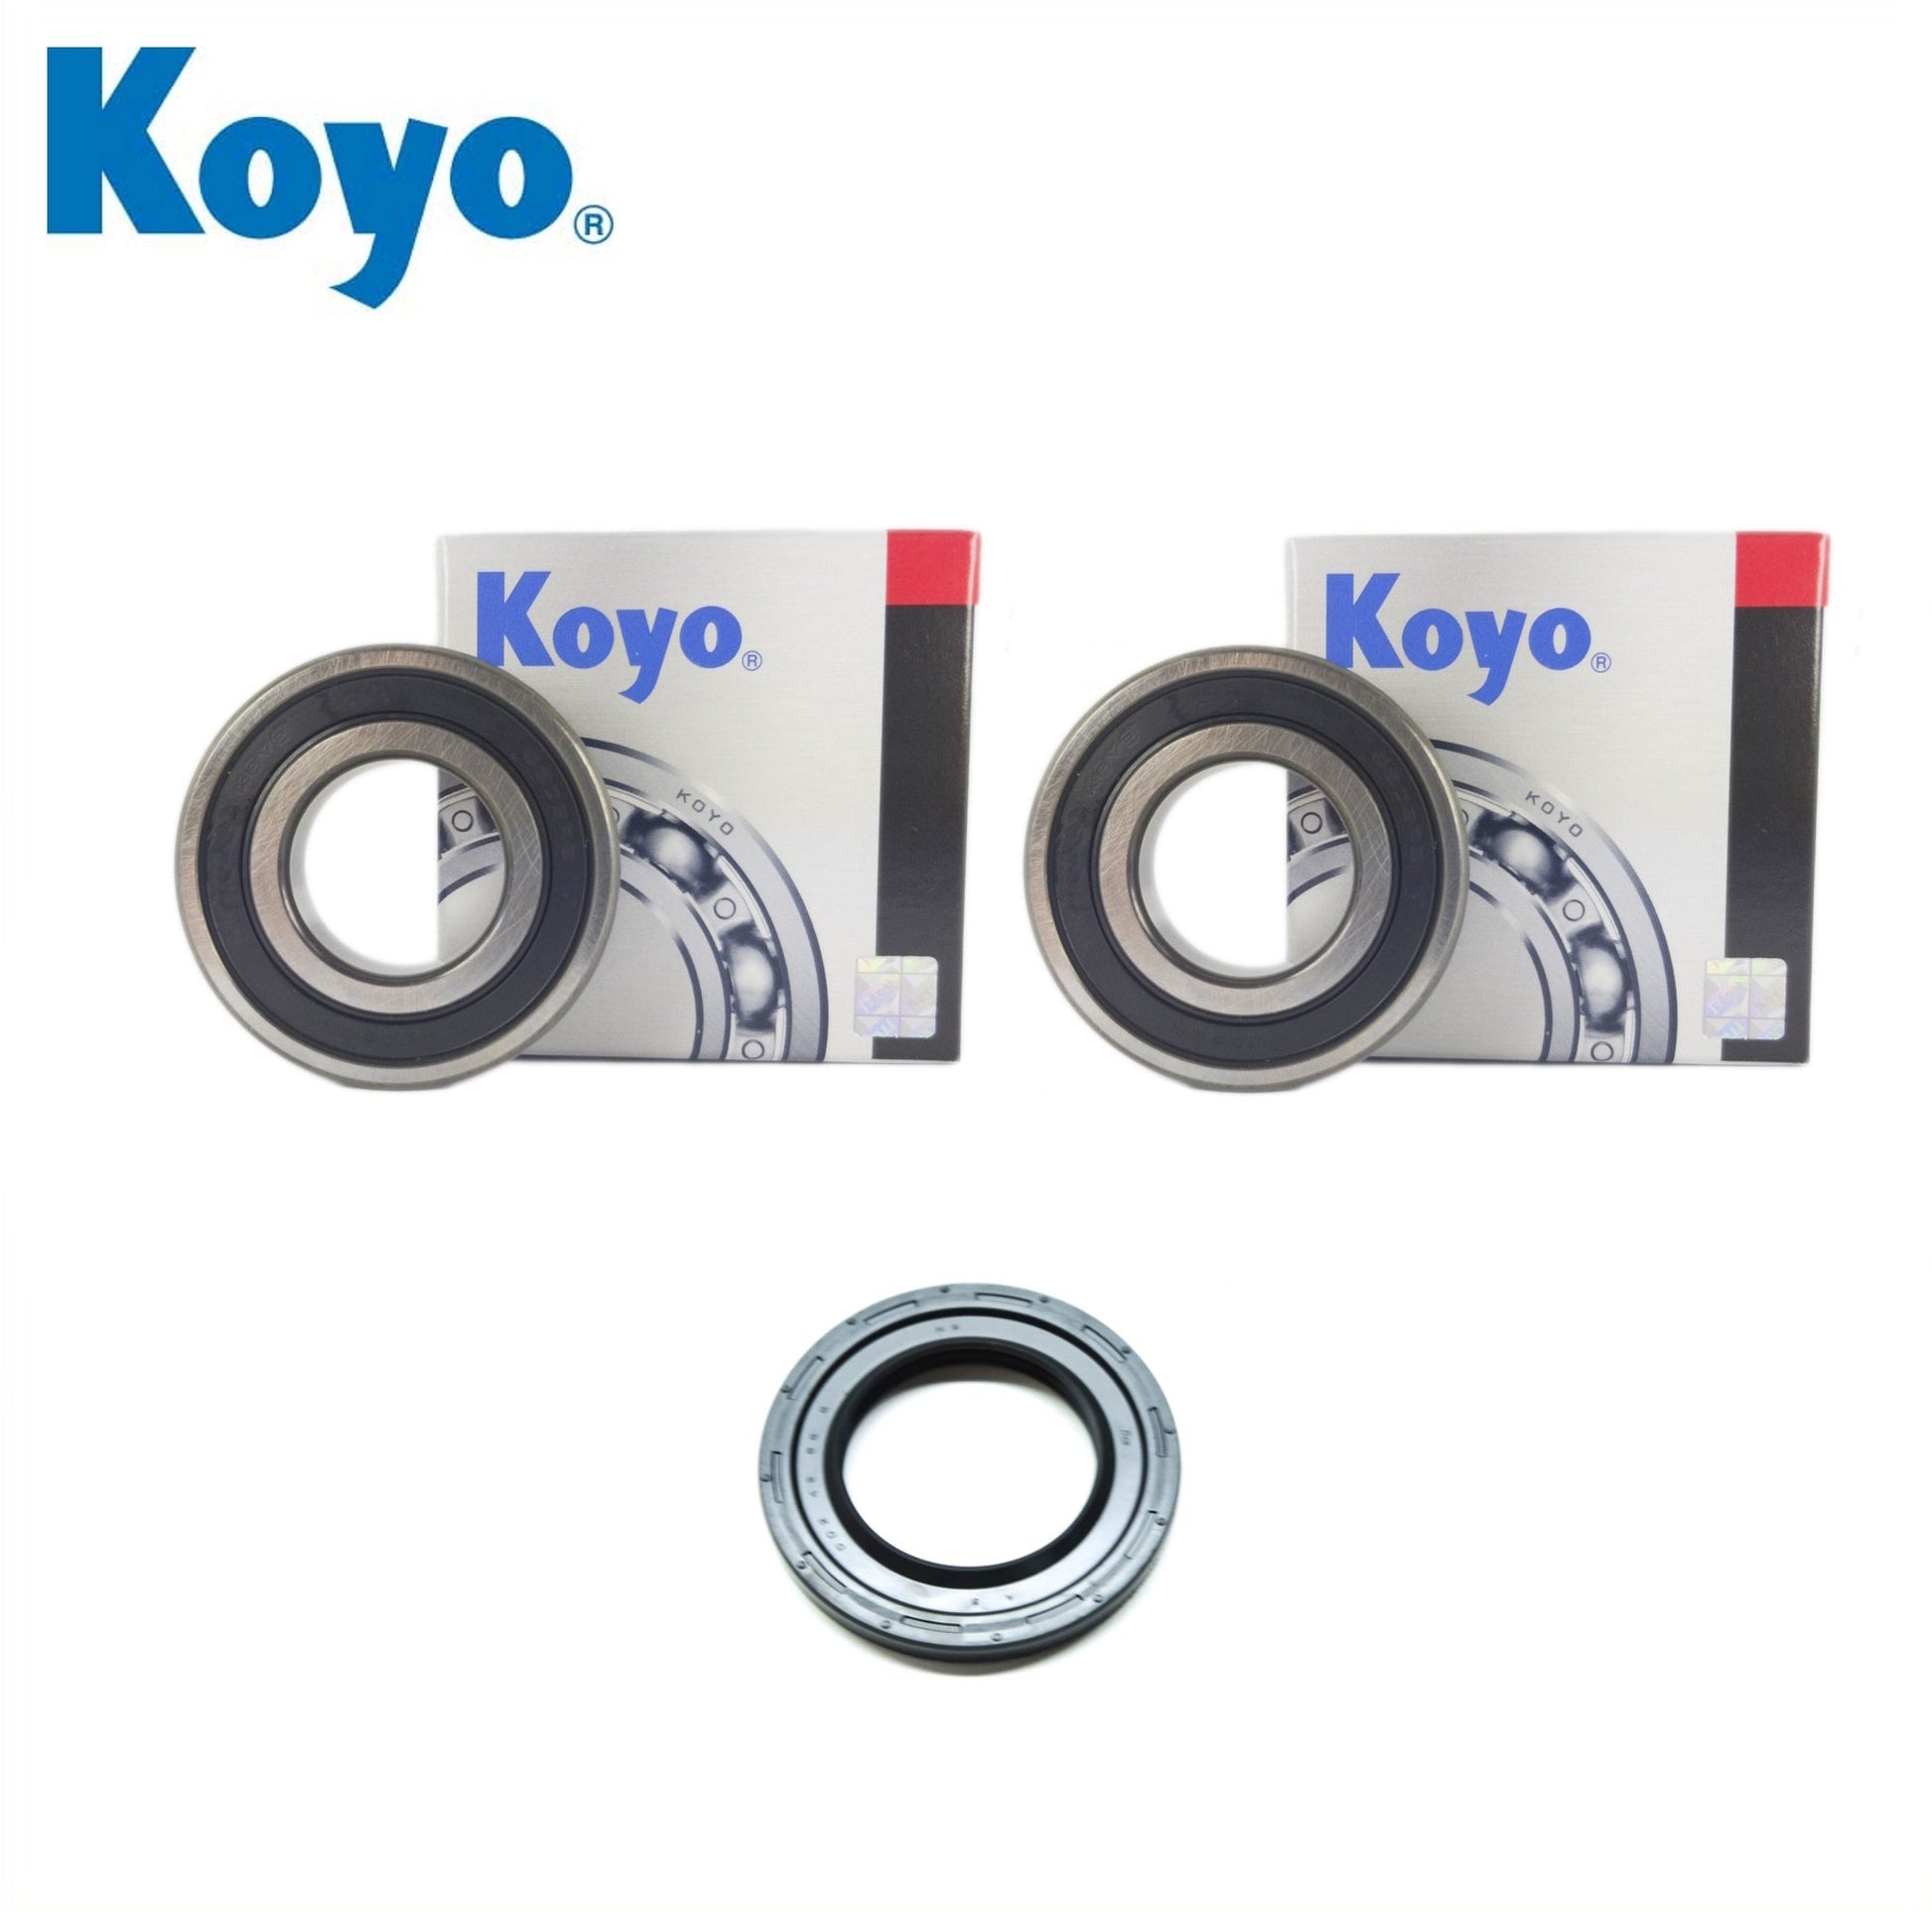 Yamaha YFM200 52H 999 Rear Wheel Bearing Kit with Koyo bearings